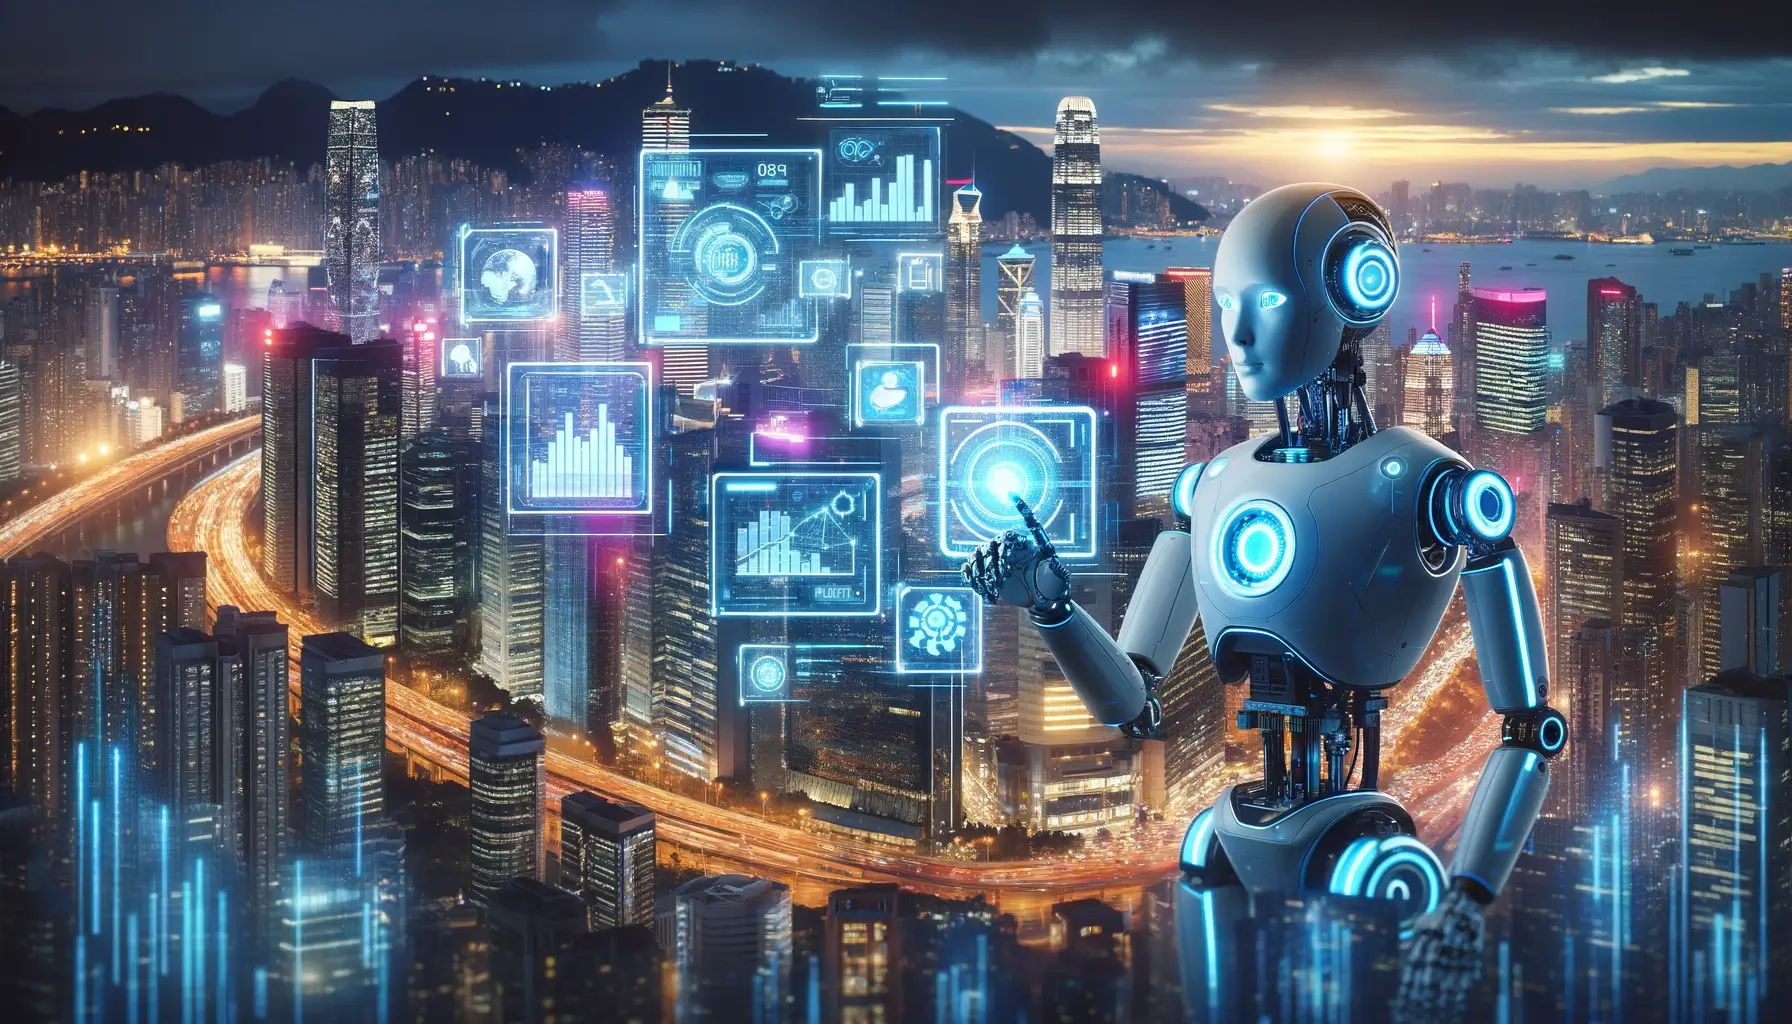 uturistische Stadtsilhouette bei Dämmerung, beleuchtet von Neonlichtern, mit einem modernen AI-Roboter, der mit einer holographischen Schnittstelle interagiert, die fortschrittliche Technologien und Diagramme anzeigt.